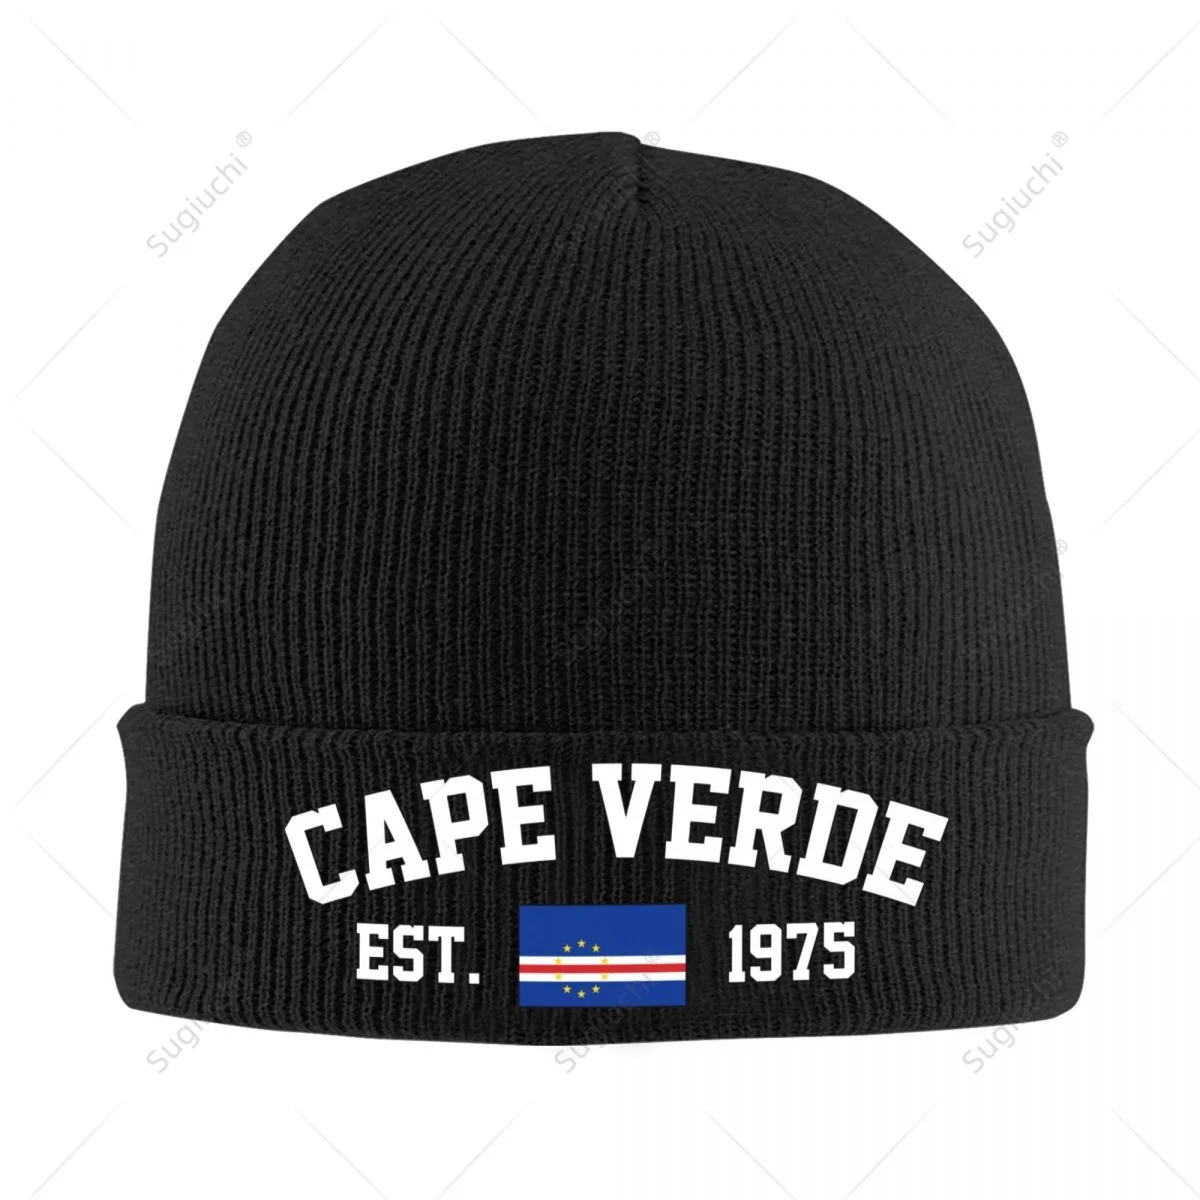 

Unisex Cape Verde EST.1975 Knitted Hat For Men Women Boys Winter Autumn Beanie Cap Warm Bonnet